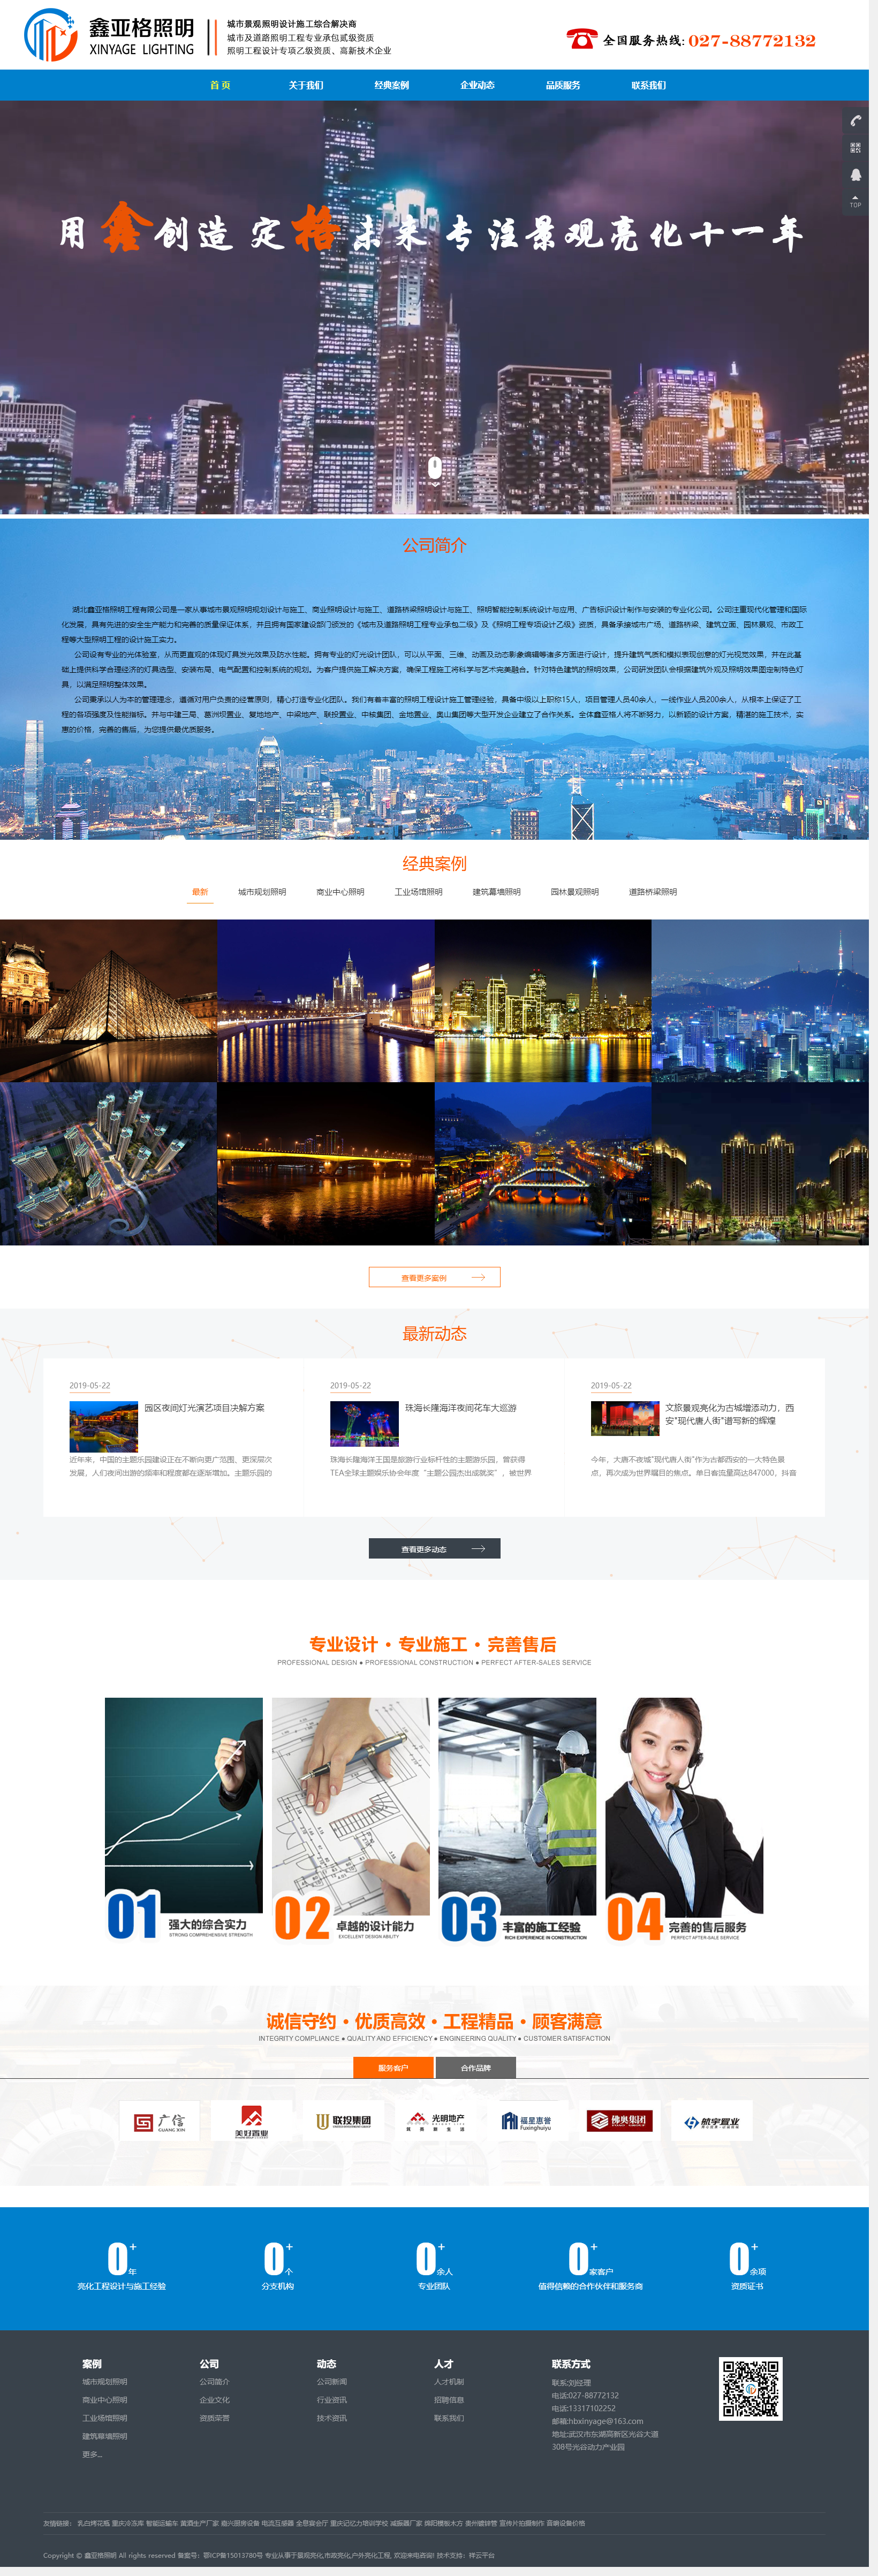 武汉网站建设,网站设计